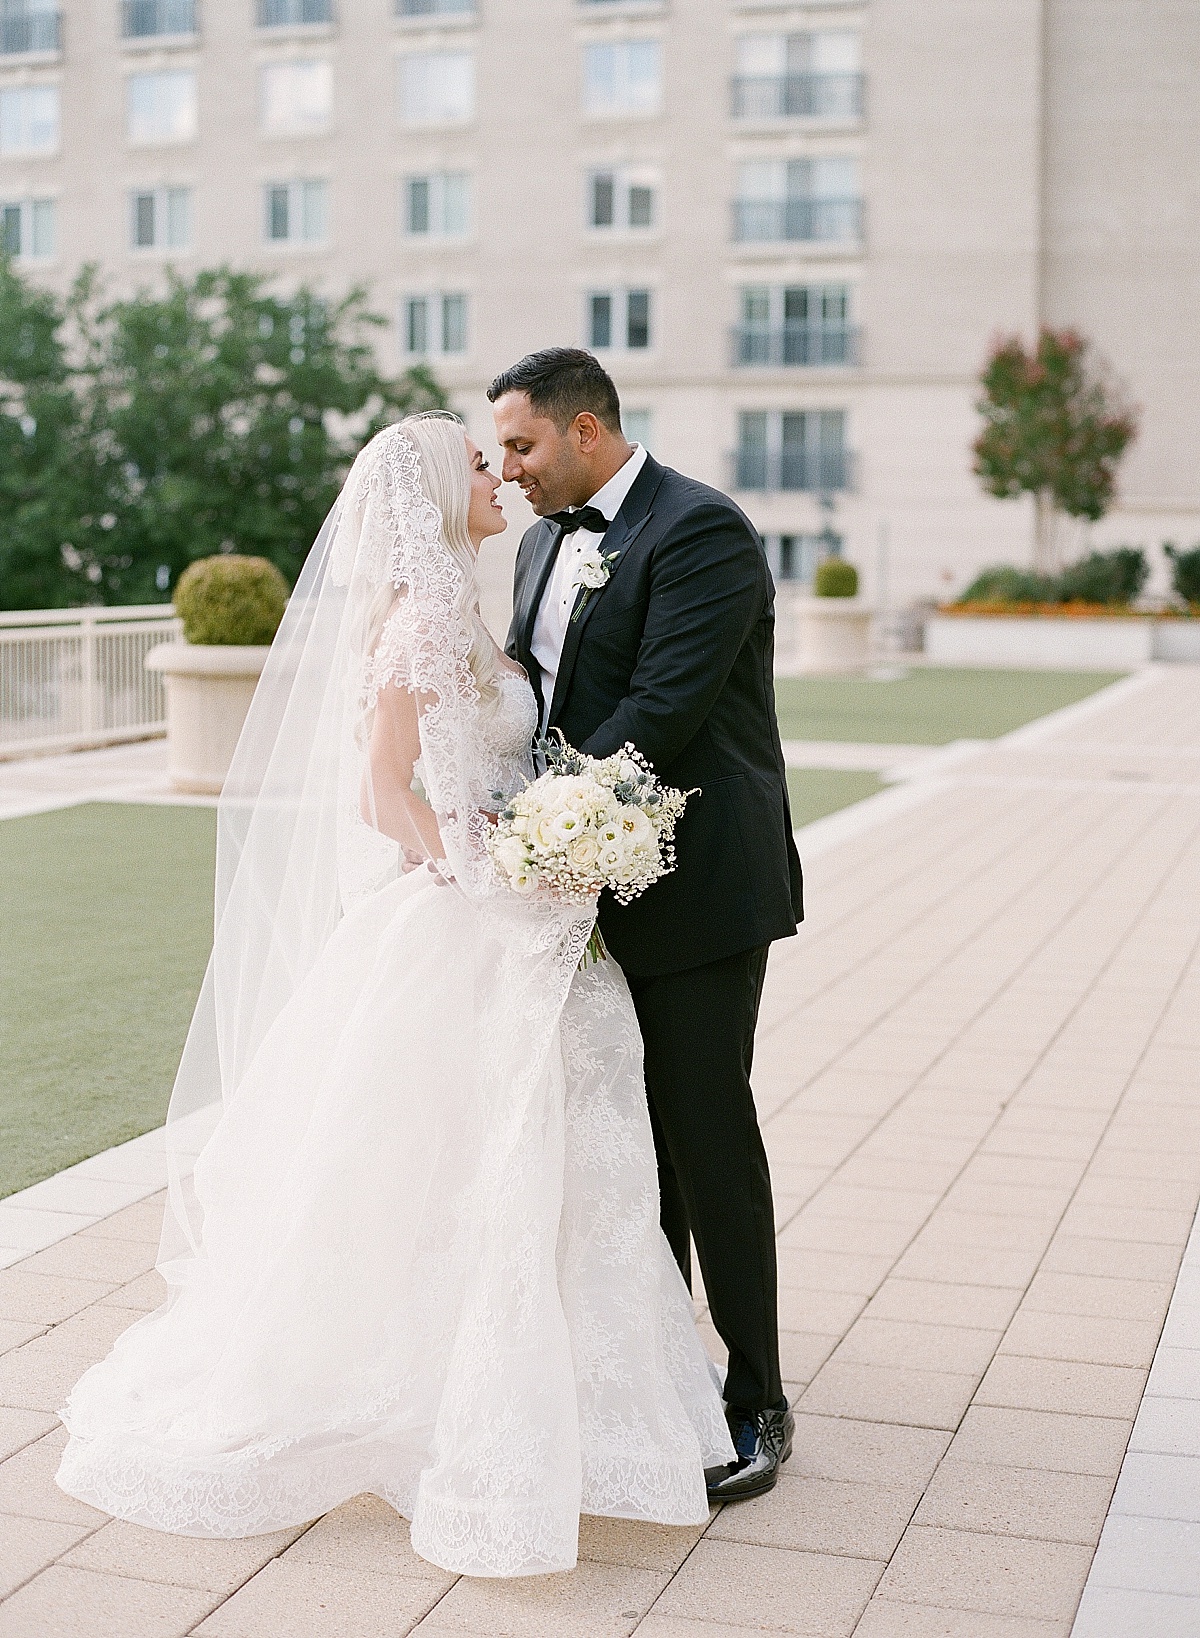 Annapolis wedding photographer | Abby Grace